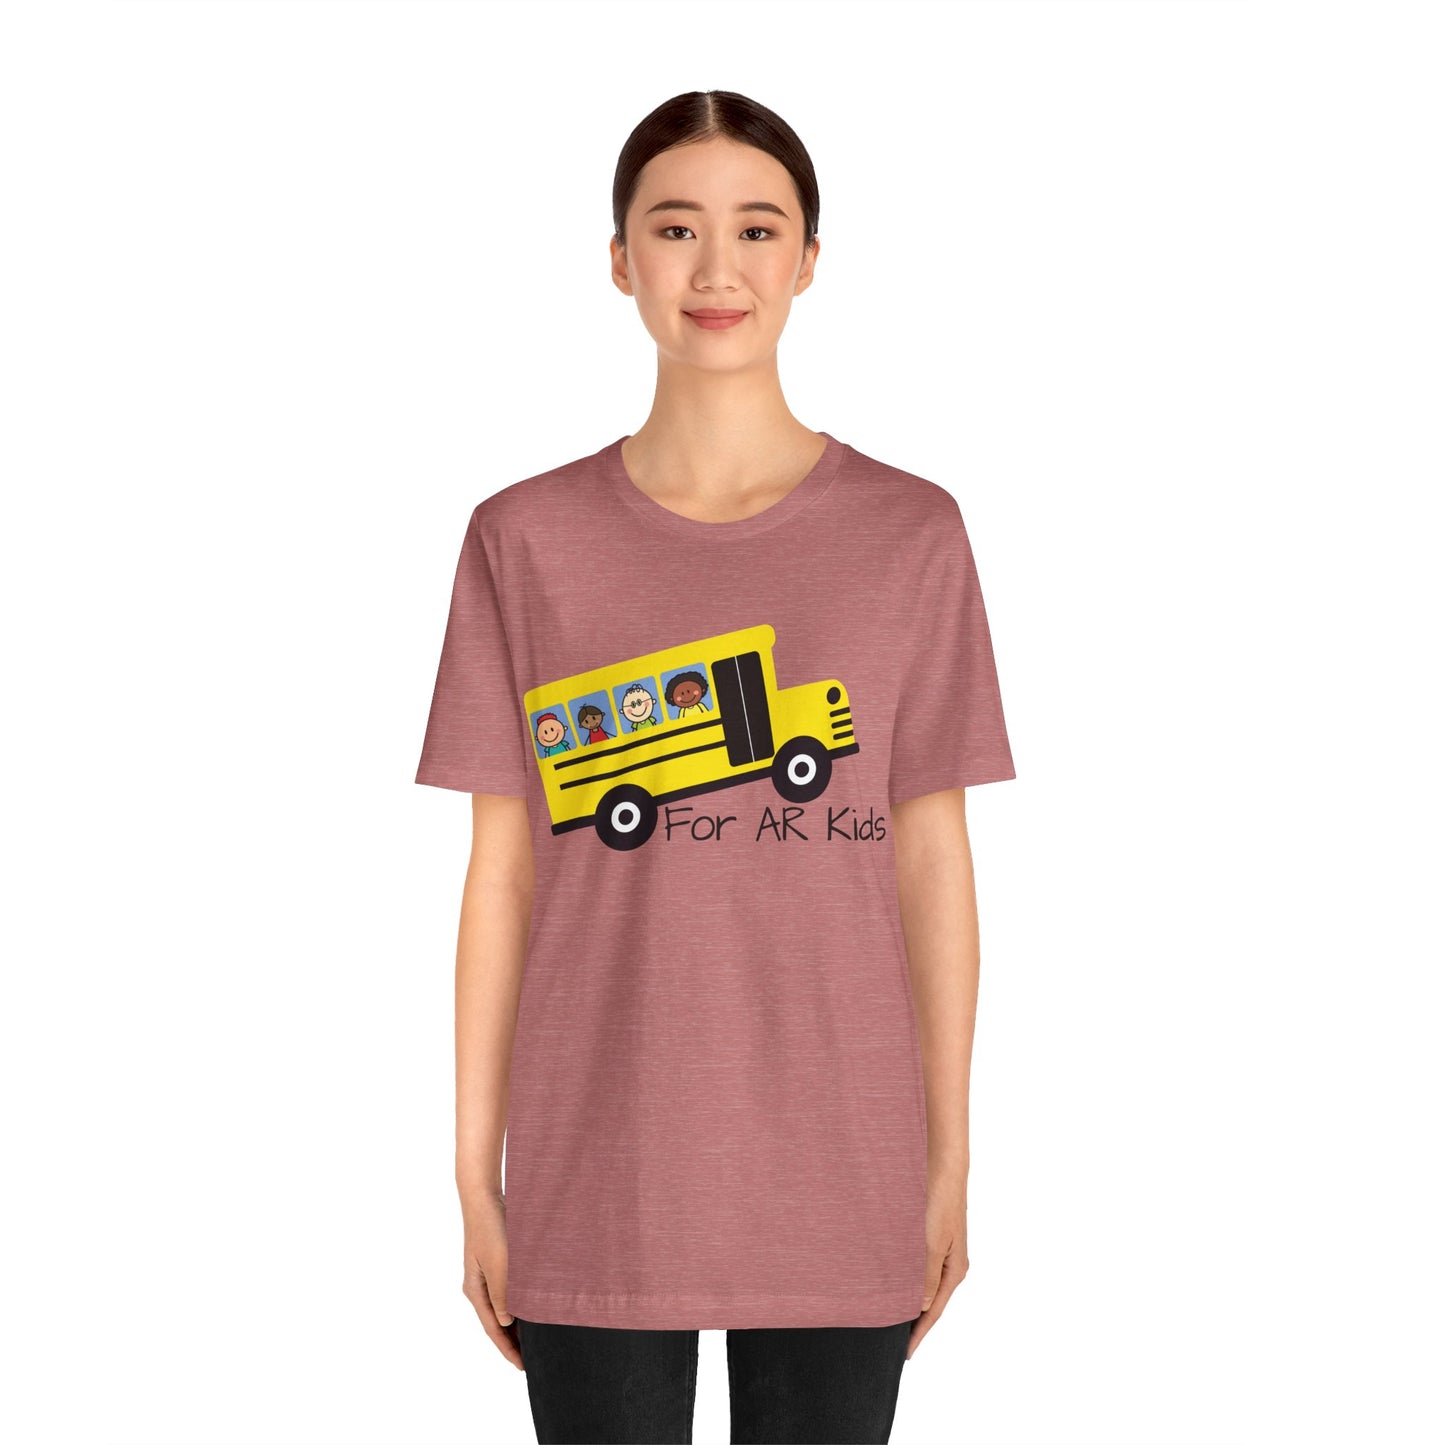 School Bus Shirt, AR Kids Shirt, Children's School Bus Shirt, Adult Shirt